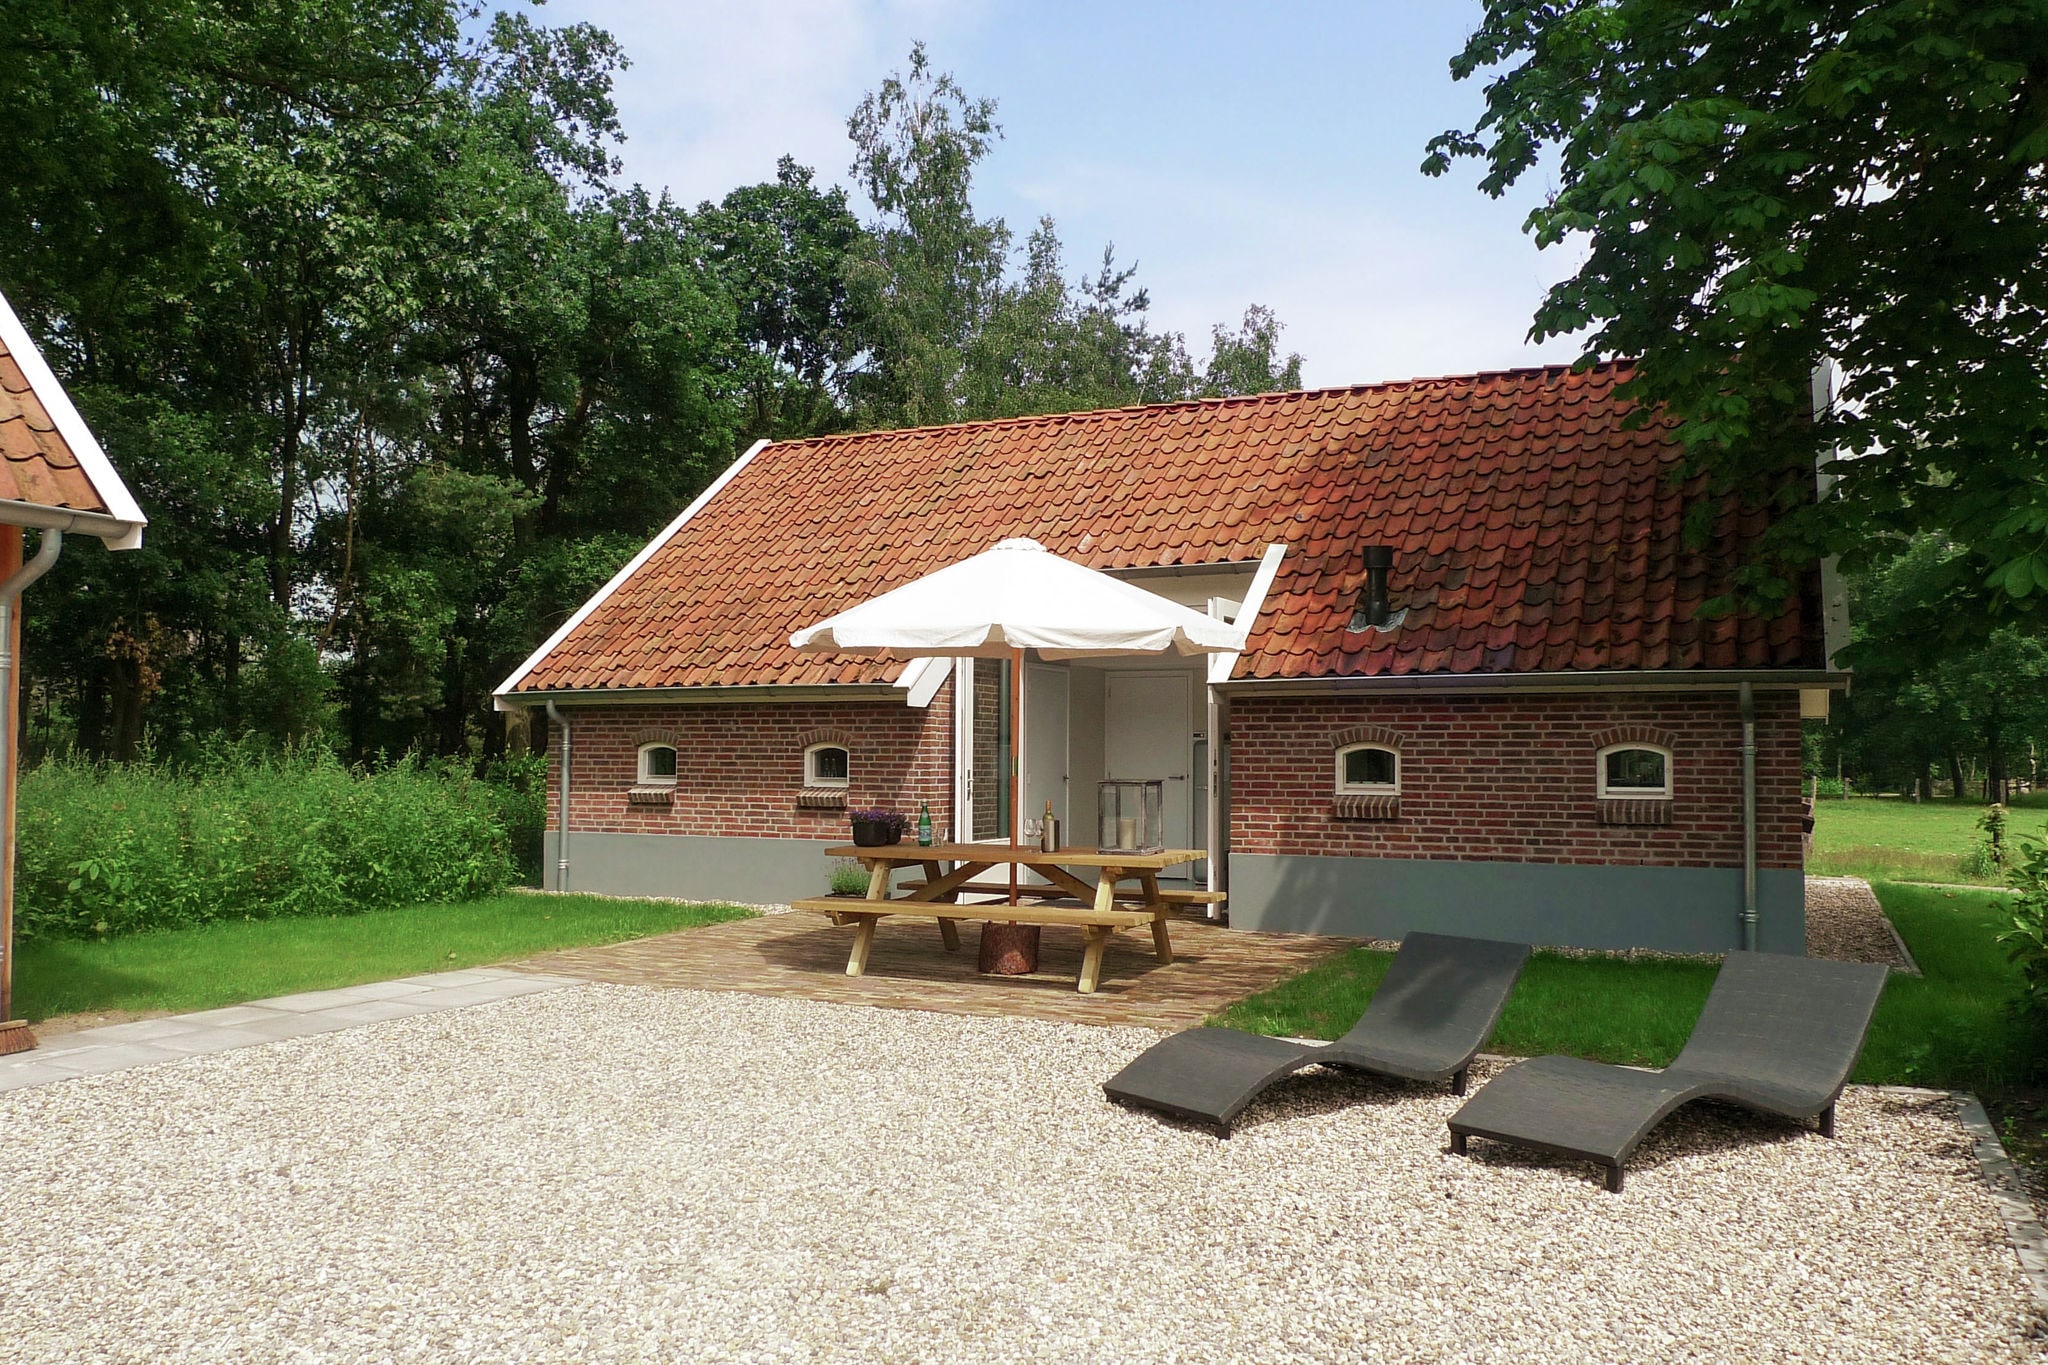 Vrijstaand en design ingericht vakantiehuis in landelijke omgeving in Twente